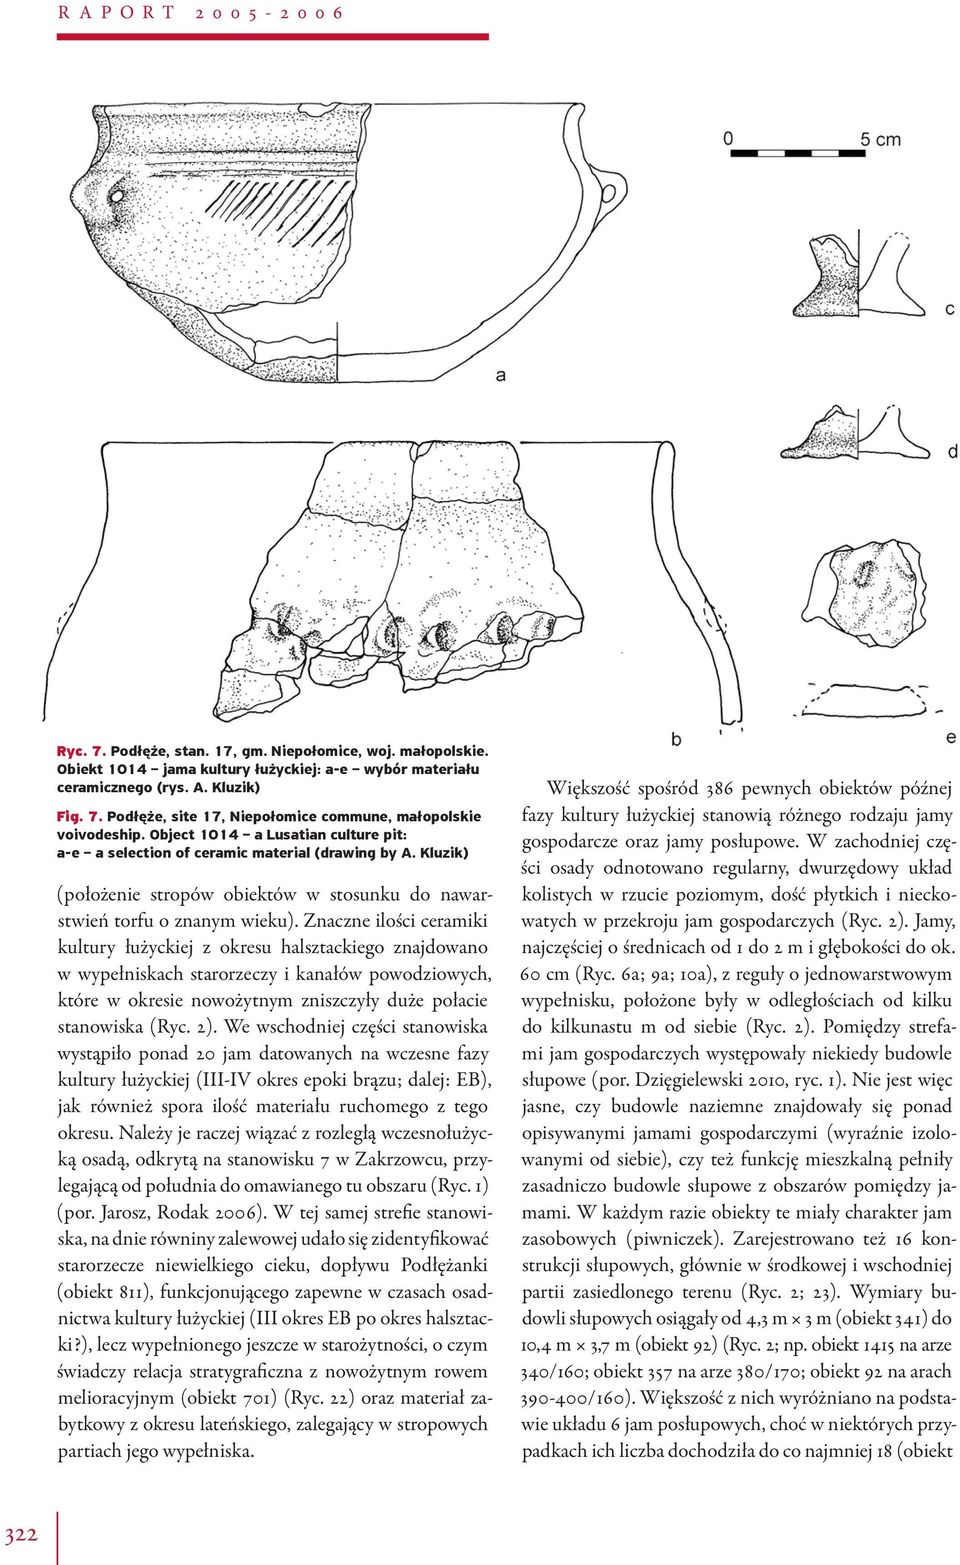 Znaczne ilości ceramiki kultury łużyckiej z okresu halsztackiego znajdowano w wypełniskach starorzeczy i kanałów powodziowych, które w okresie nowożytnym zniszczyły duże połacie stanowiska (Ryc. 2).